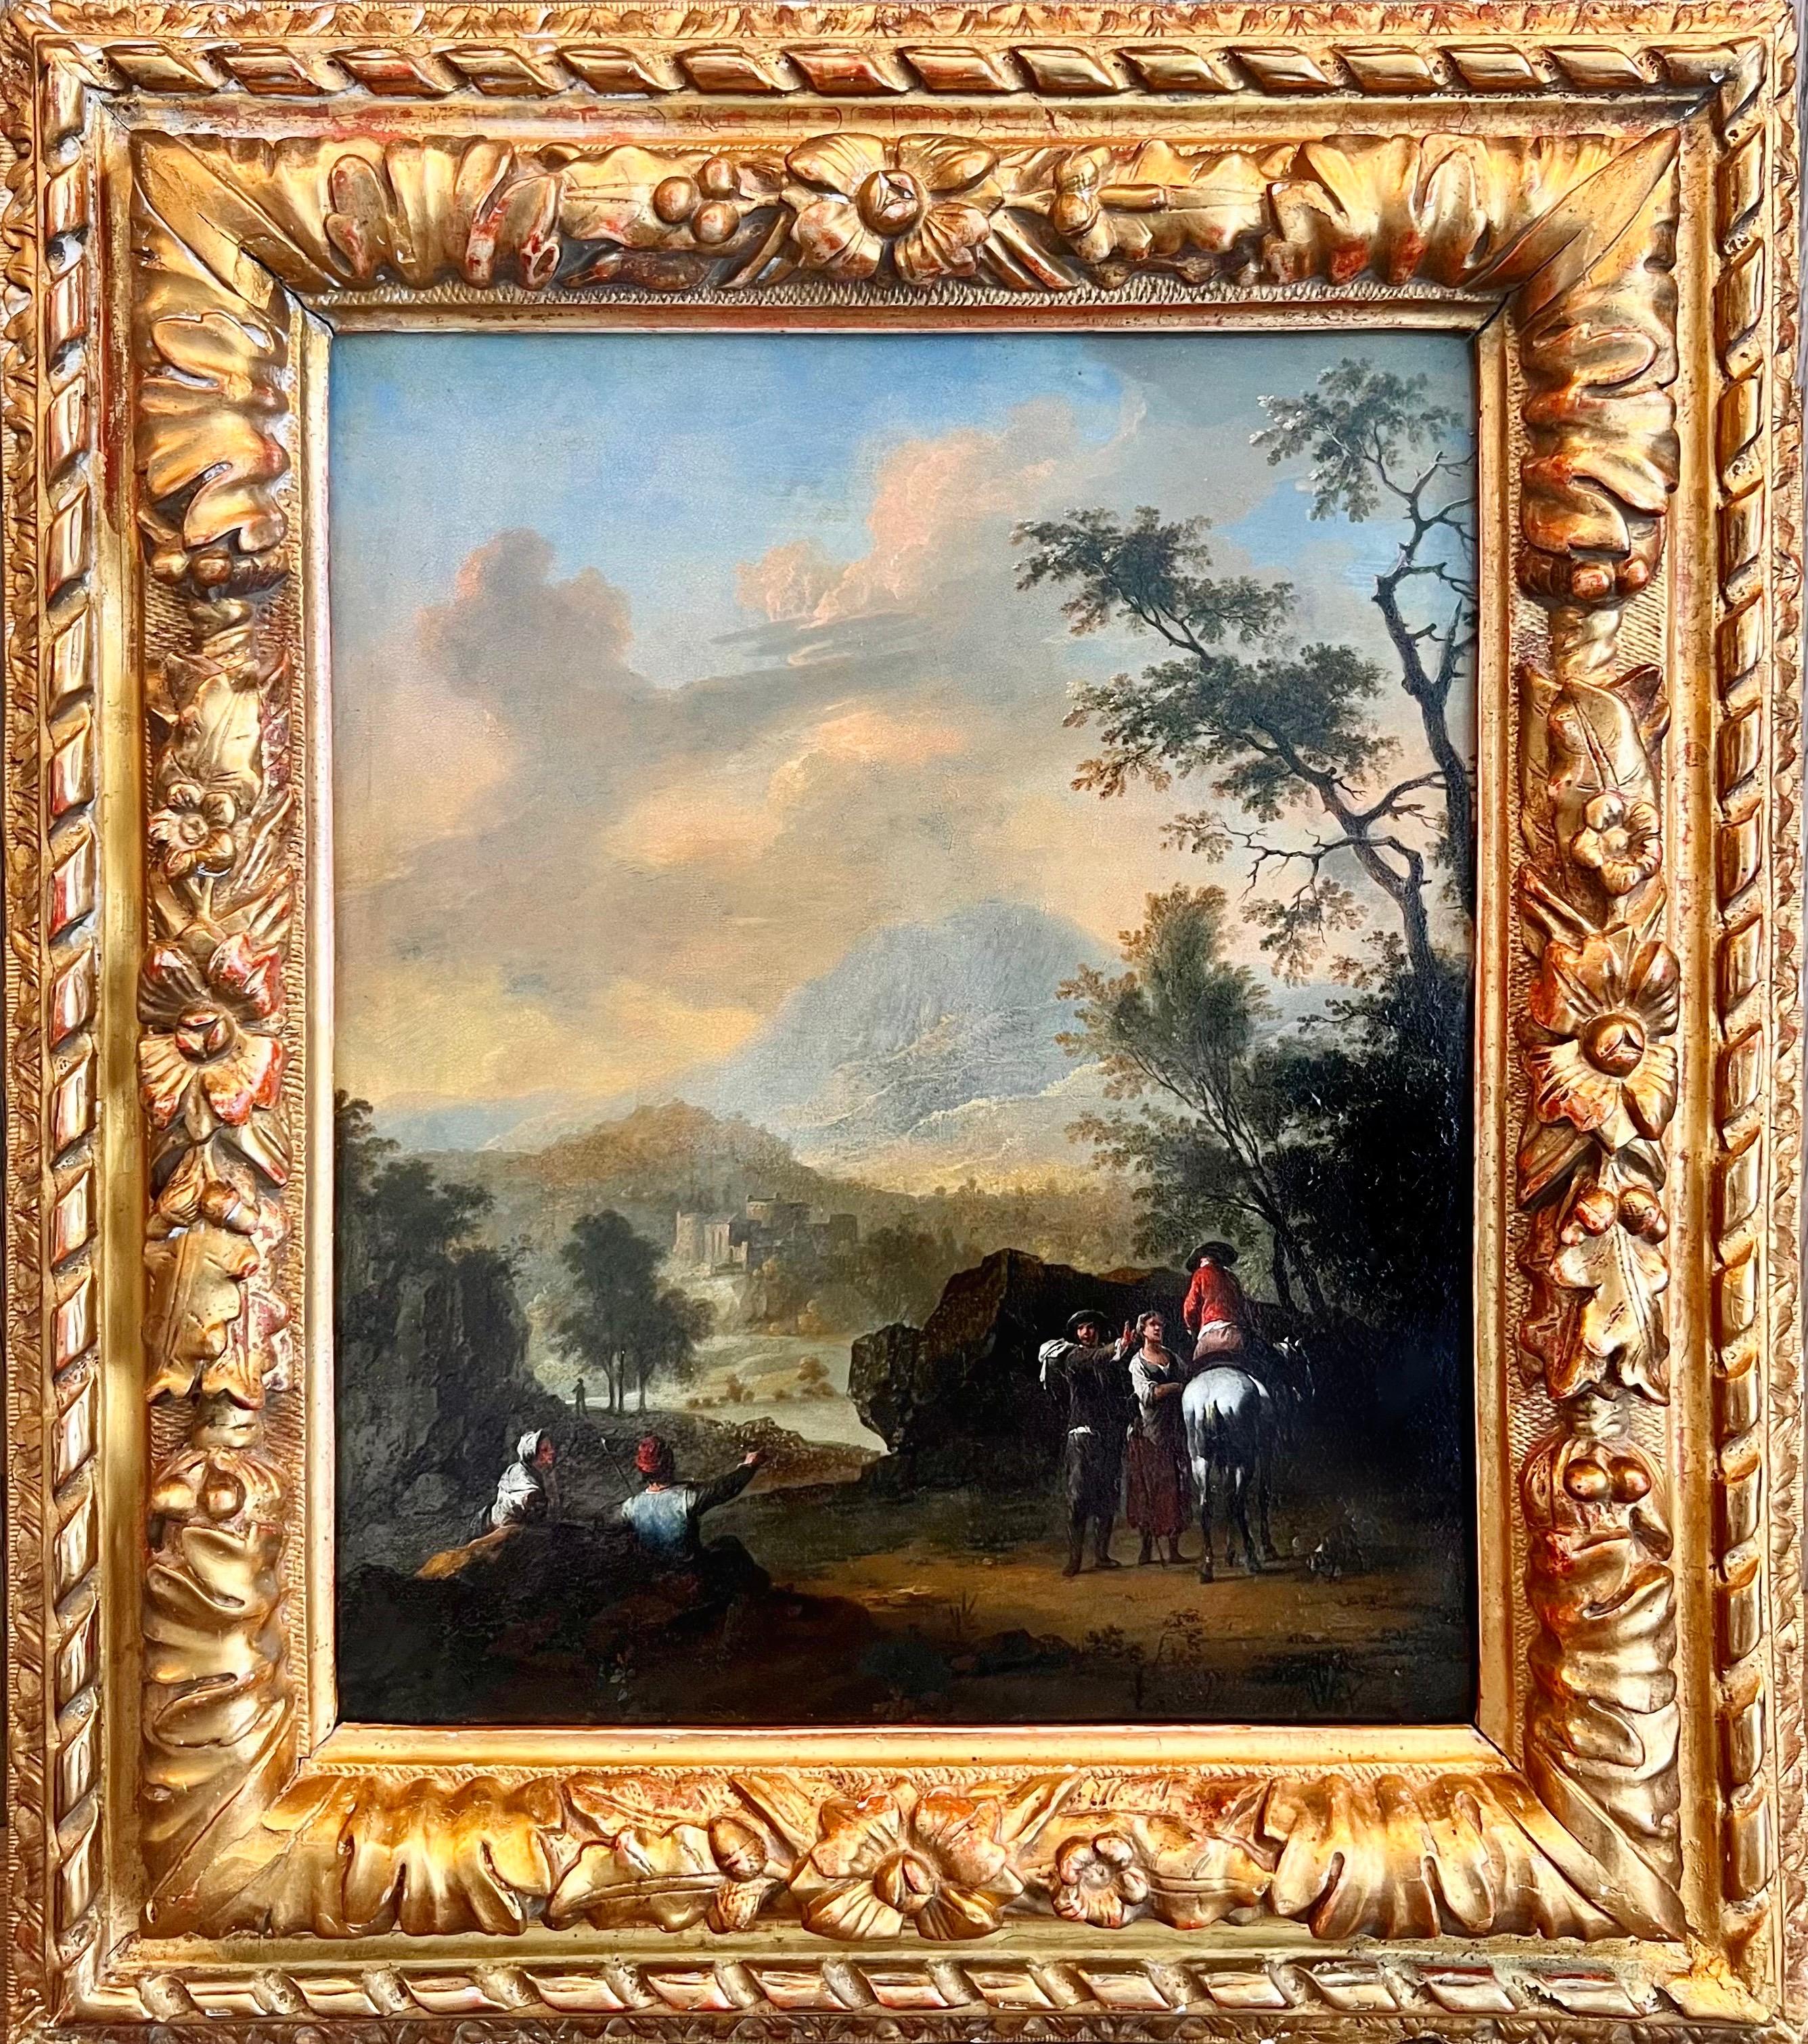 Ölgemälde eines Alten Meisters aus dem 18. Jahrhundert – Reisende bei Sonnenuntergang in einer Landschaft 